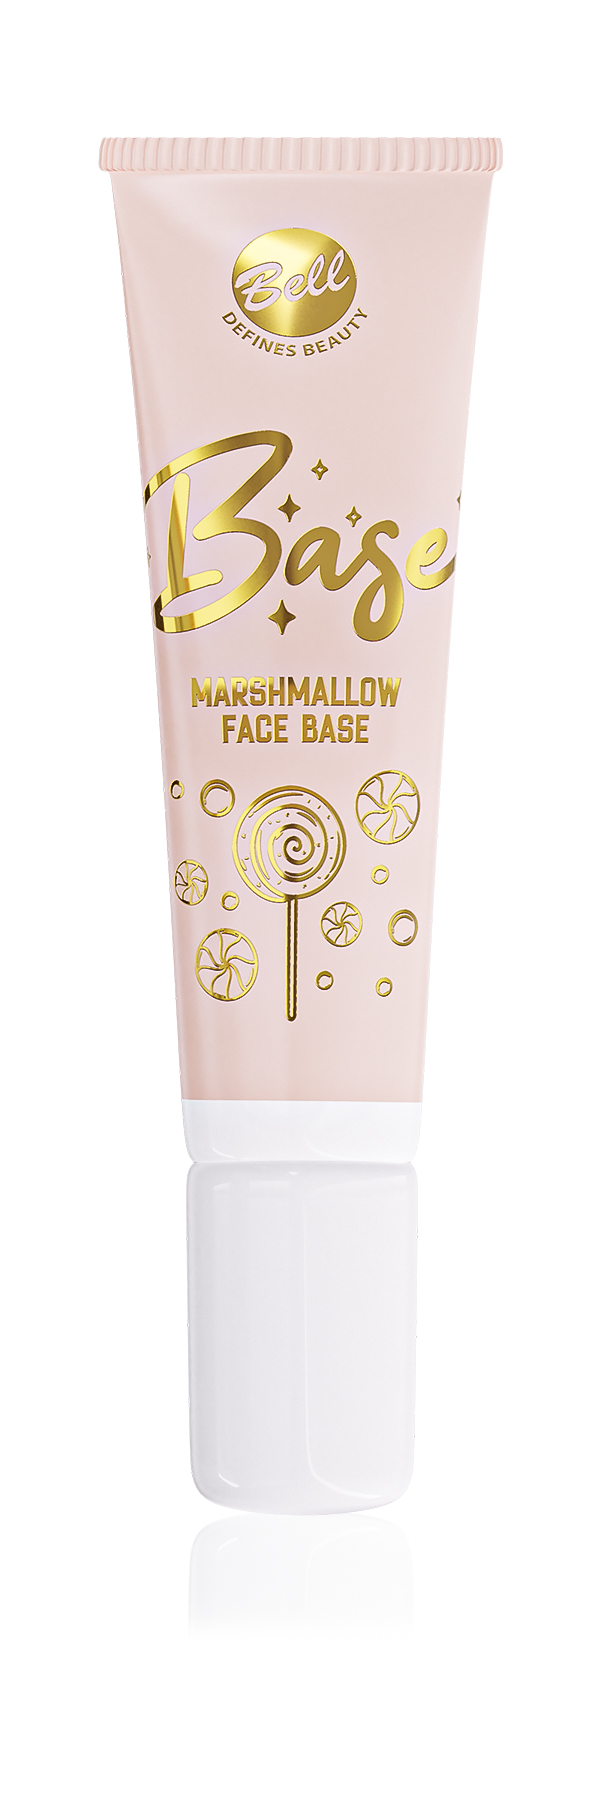 Bell baza CANDY SHOP Marshmallow Face Base 001 Baza udoskonalająca skórę, 10g